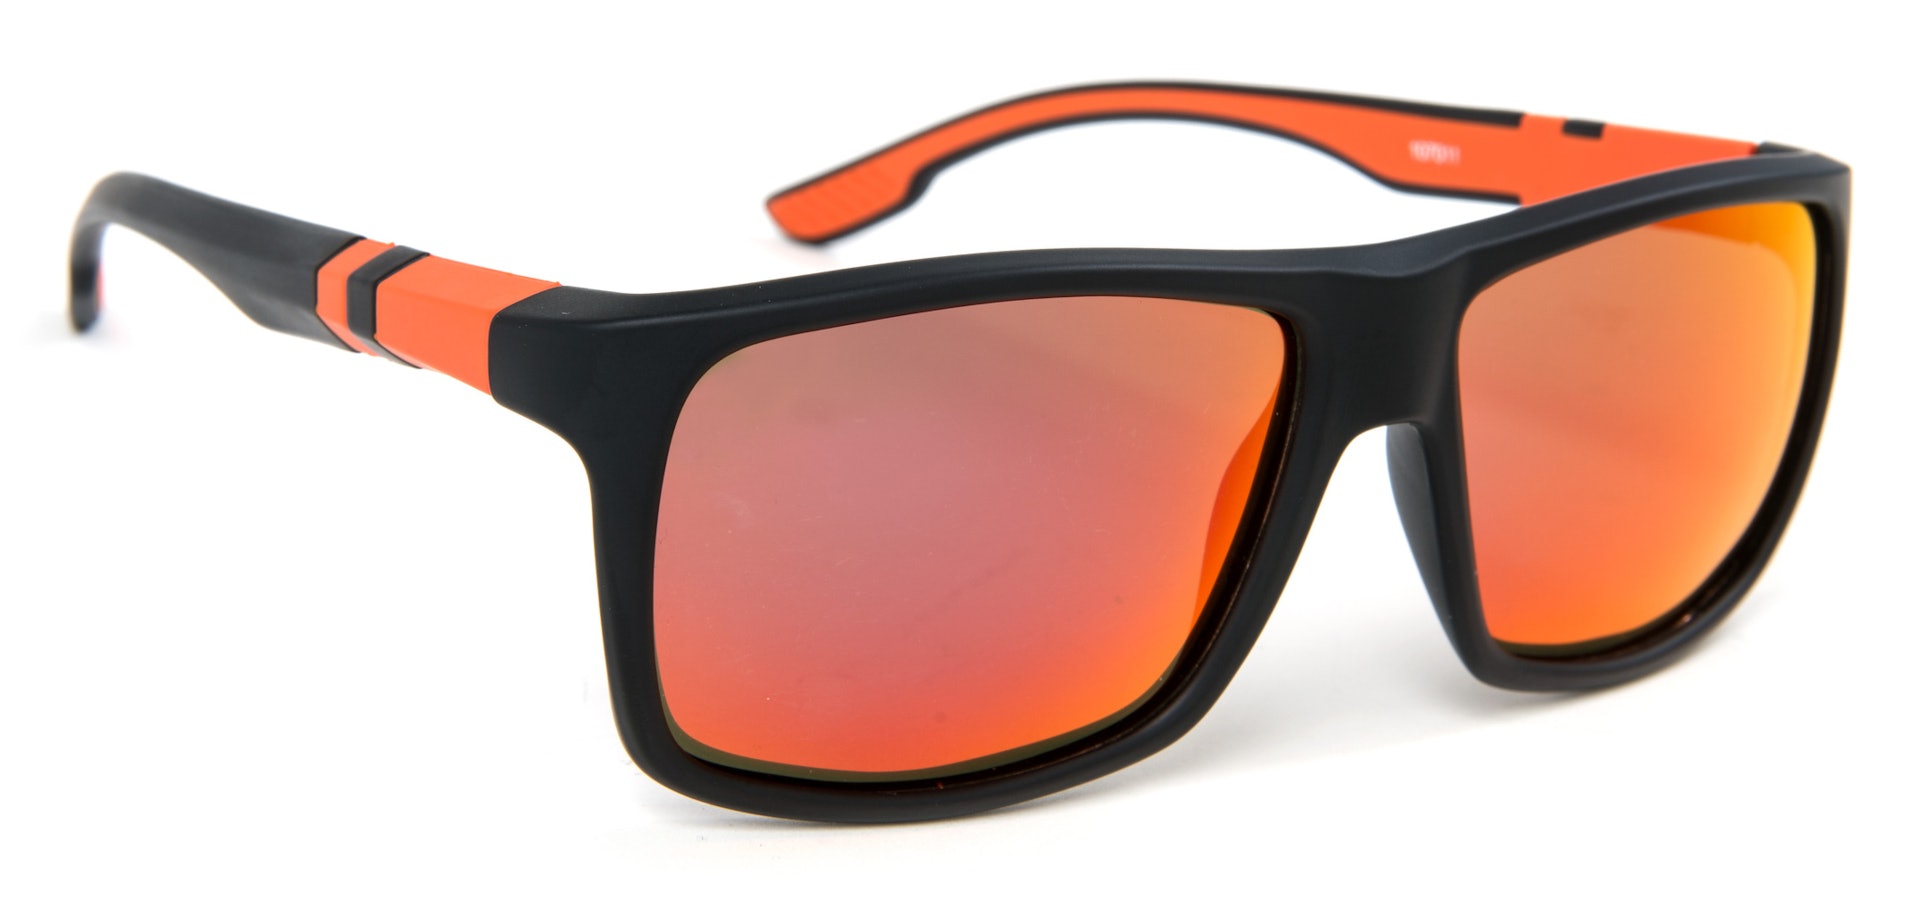 LPX Sunglasses - Amber Lens (bilde 1 av 2)